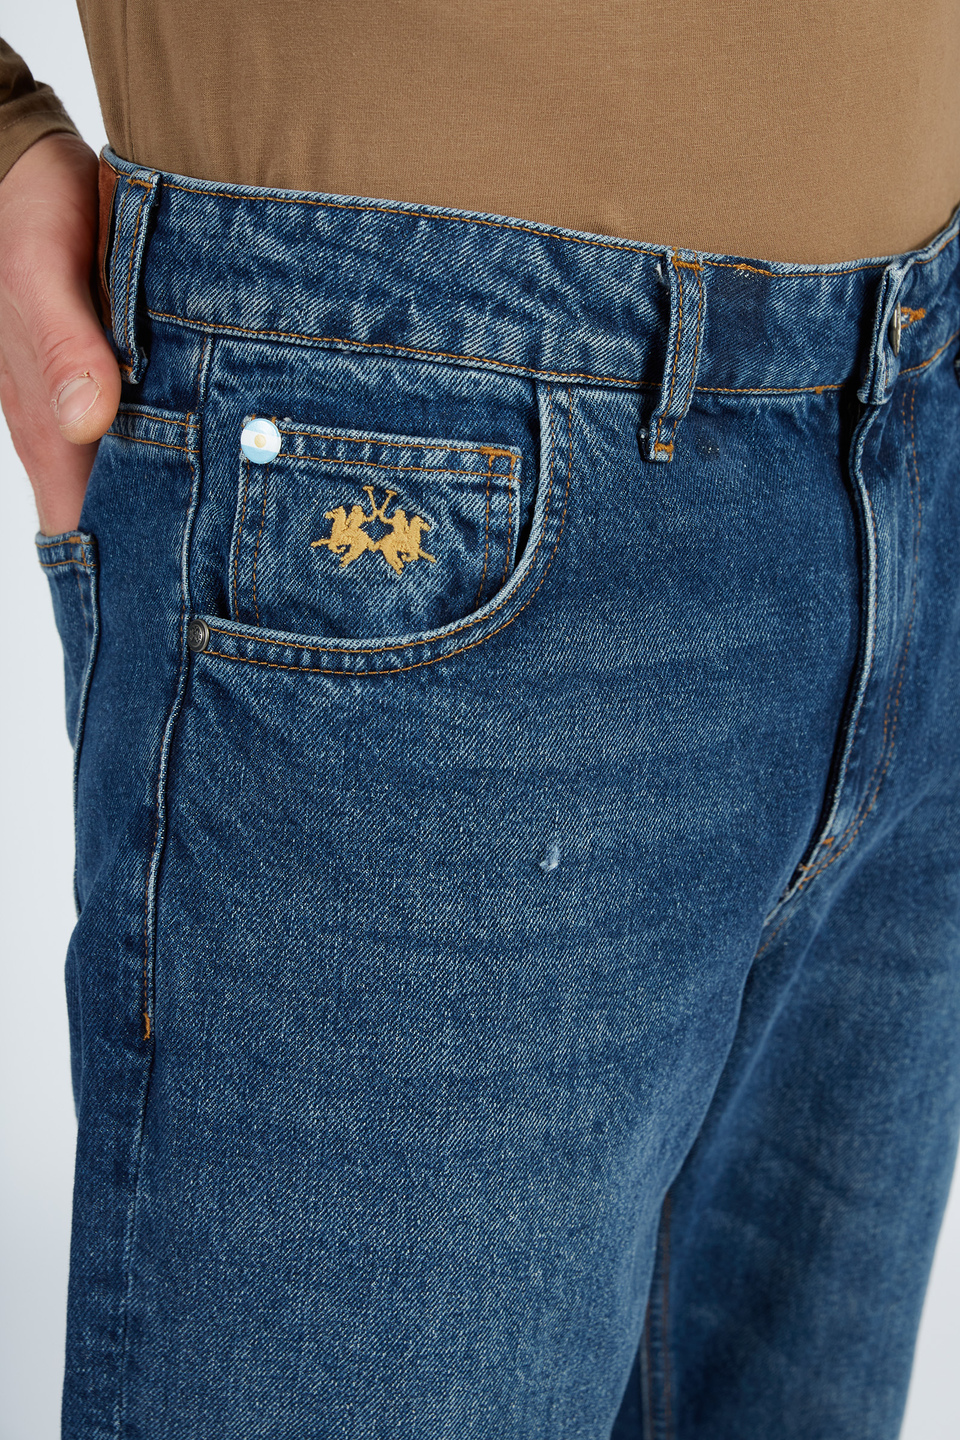 Pantalone da uomo modello 5 tasche in denim regular fit | La Martina - Official Online Shop